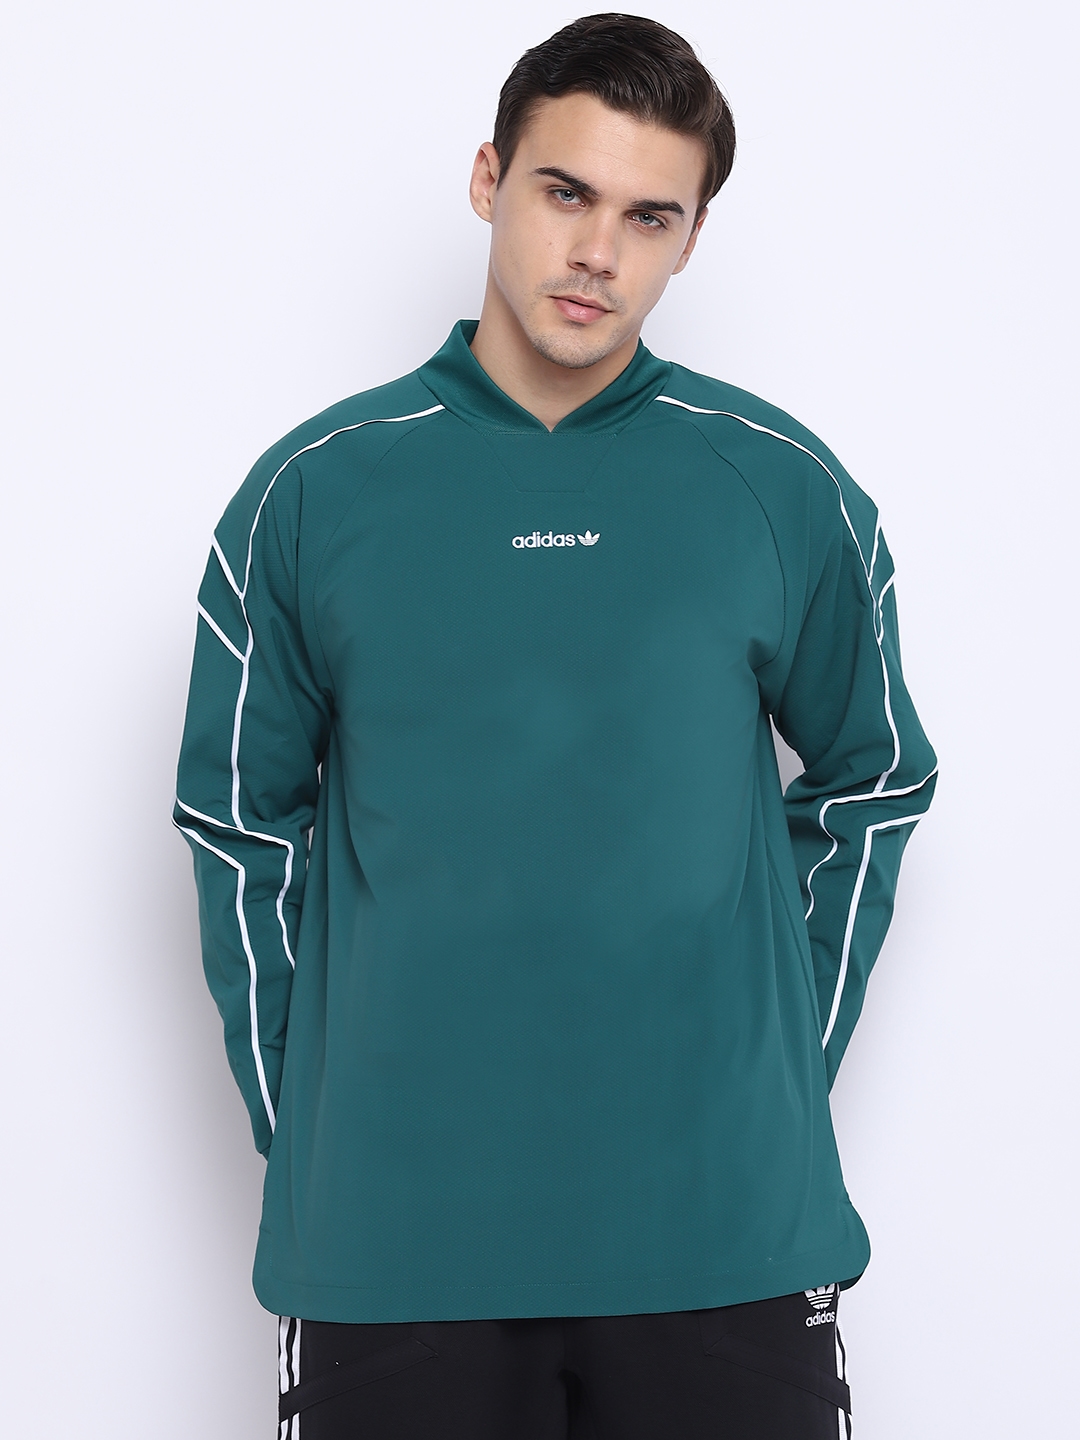 cortar a tajos Peligro moco Buy ADIDAS Originals Men Green EQT Goalie Jersey - Tshirts for Men 7101607  | Myntra